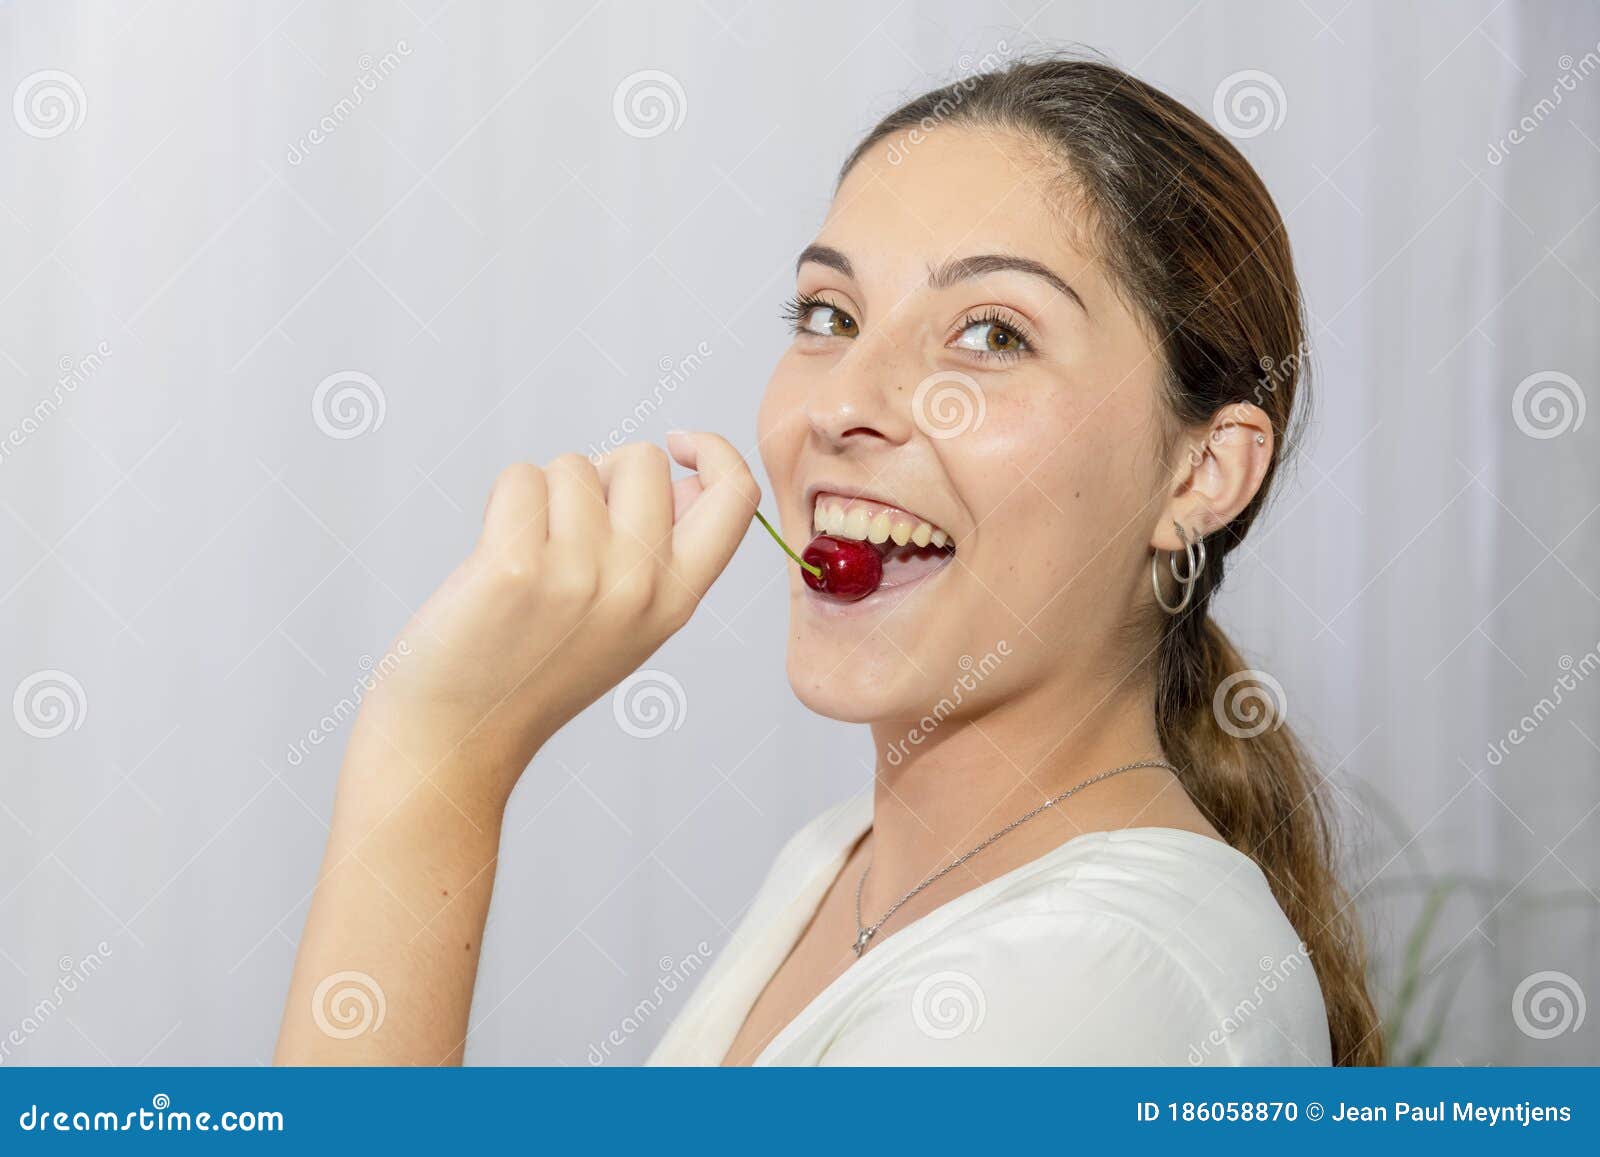 用叉子叉着嘴吃樱桃番茄的女人照片摄影图片_ID:360554373-Veer图库